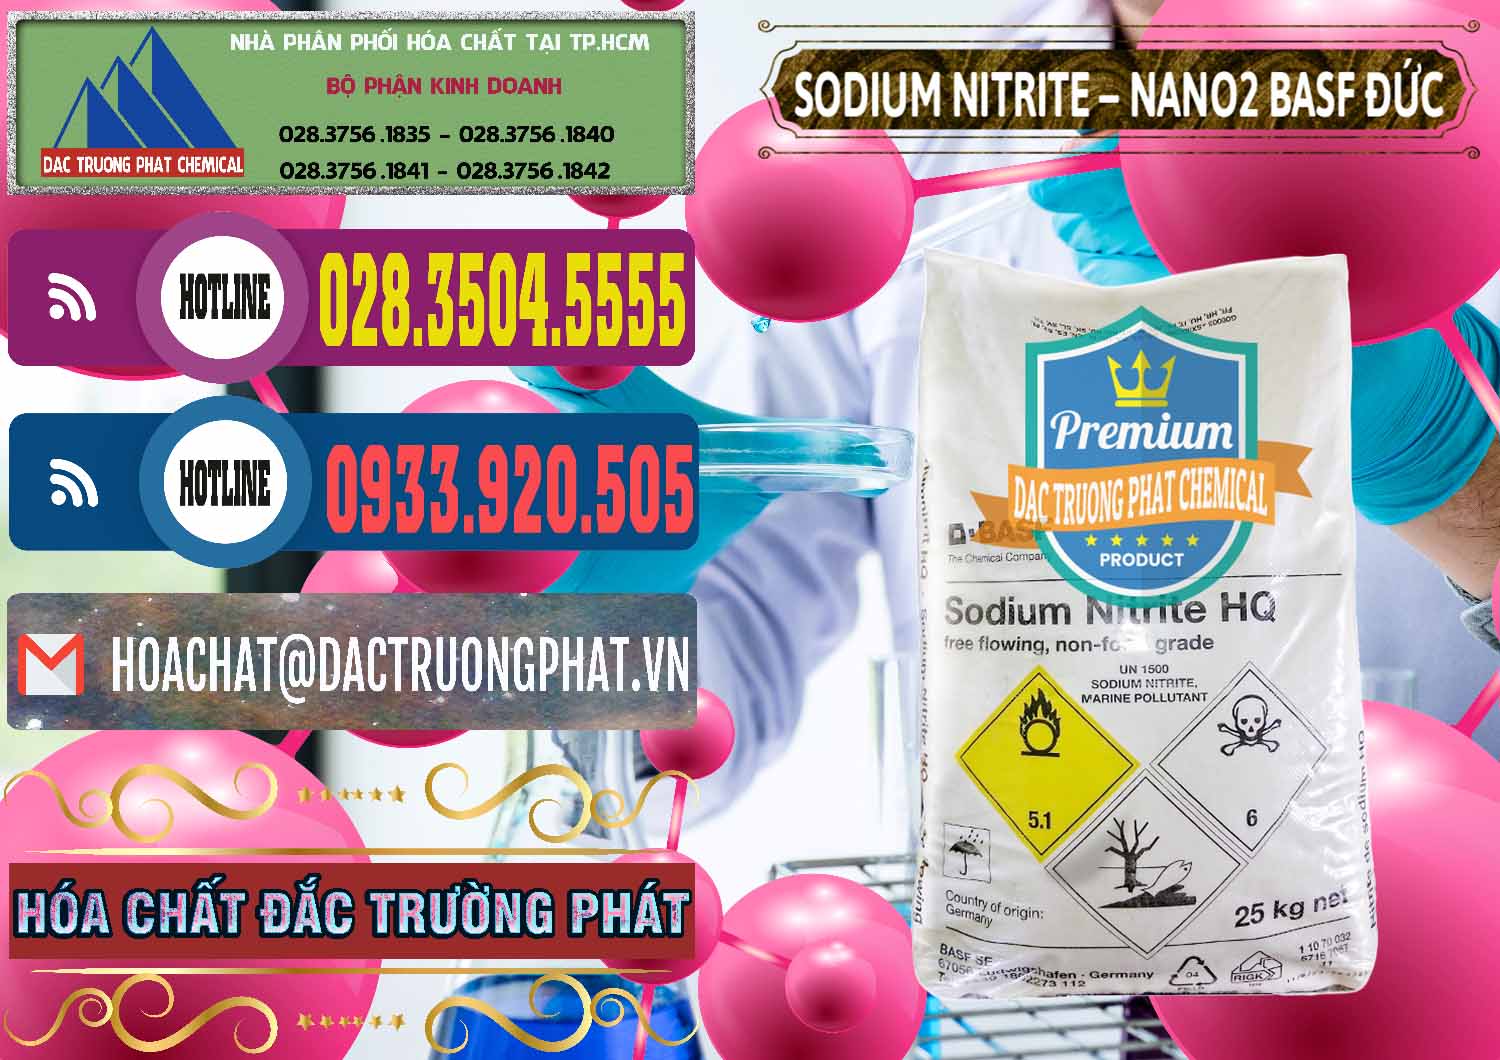 Nơi chuyên bán ( cung ứng ) Sodium Nitrite - NANO2 Đức BASF Germany - 0148 - Cty cung cấp và bán hóa chất tại TP.HCM - muabanhoachat.com.vn